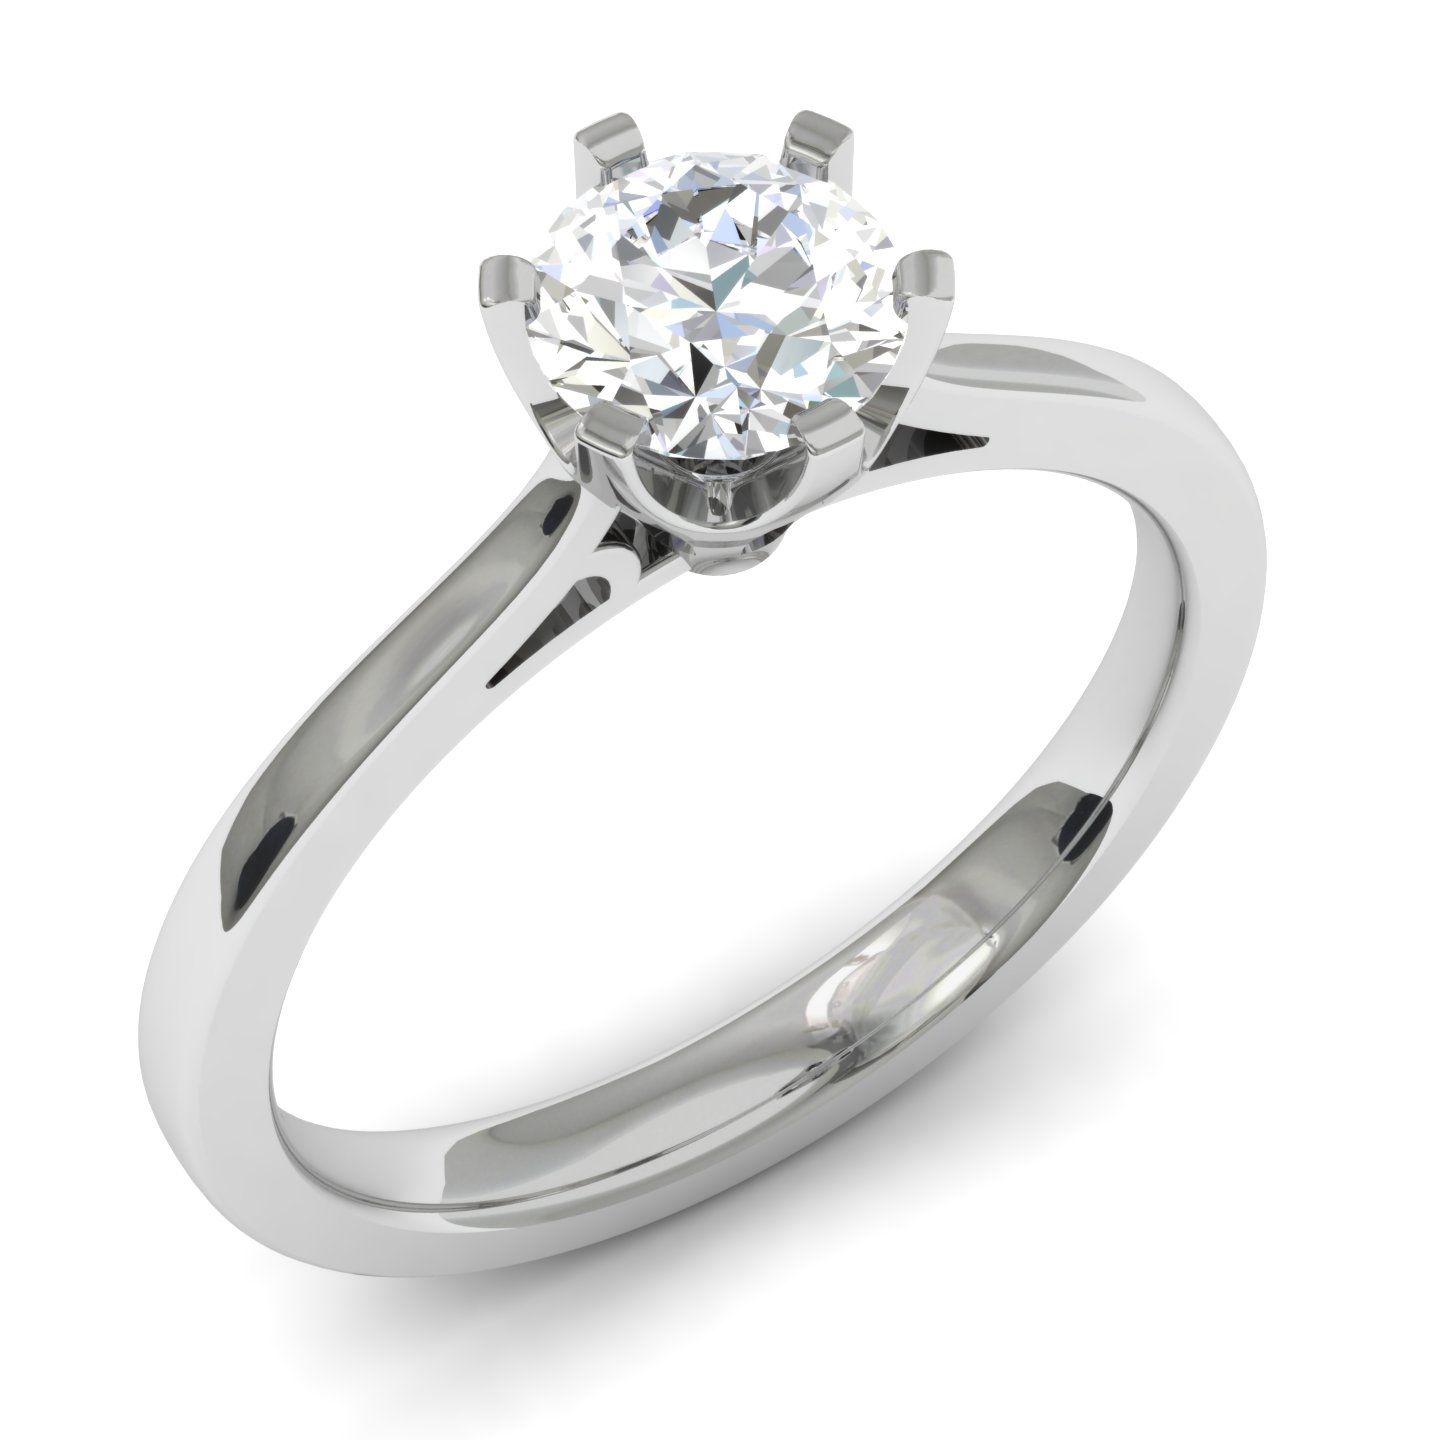 Кольцо с бриллиантами r01-1851359axd-r17. 3037905 82/3086-20 Кольцо с бриллиантом Ch. Gianni Lazzaro помолвочное кольцо.